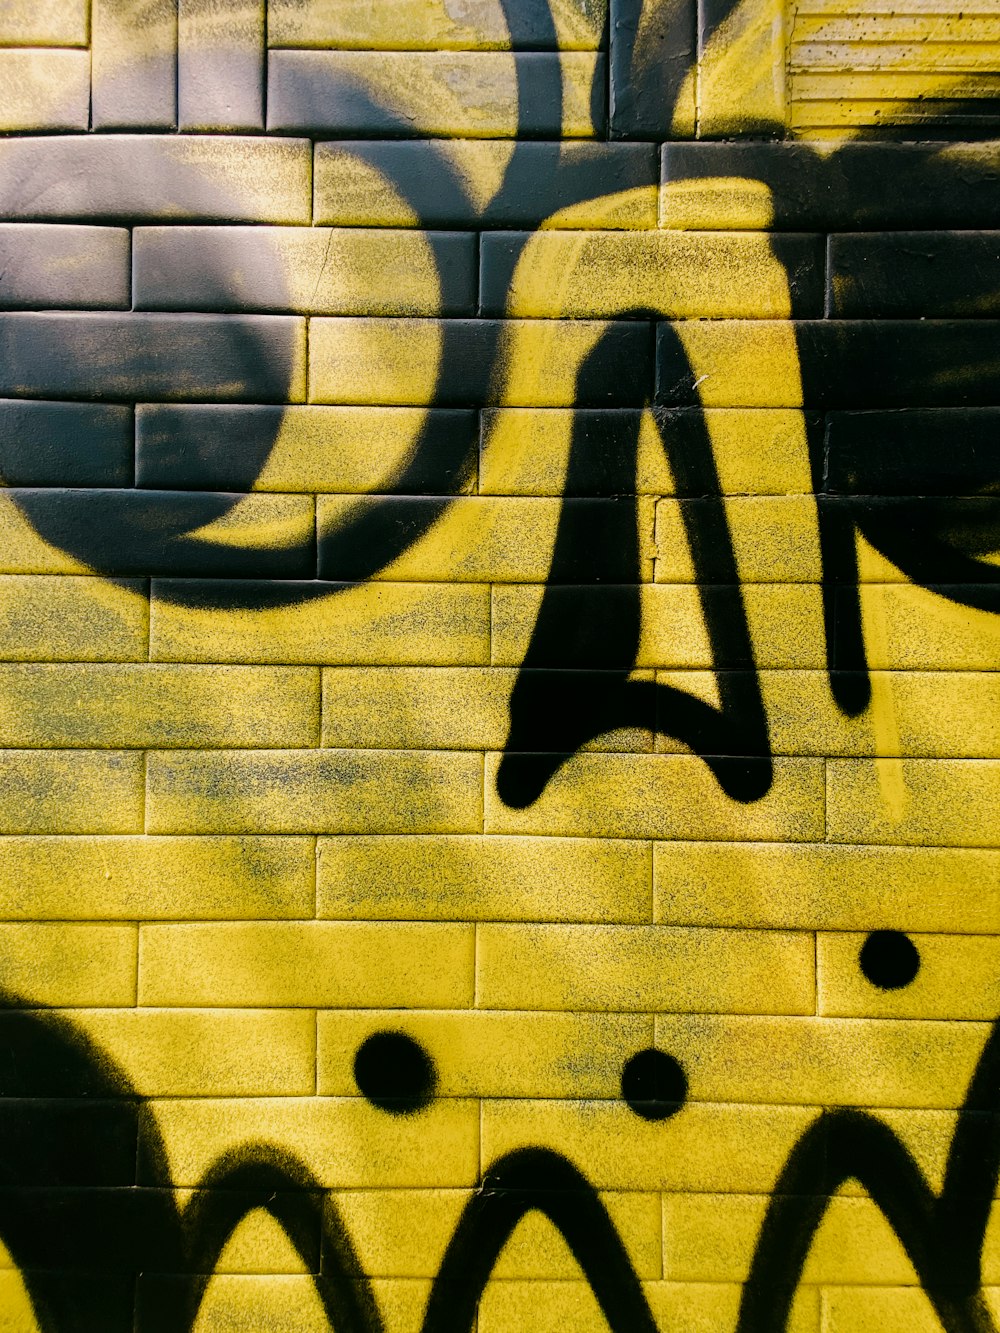 un mur de briques jaunes avec des graffitis noirs dessus